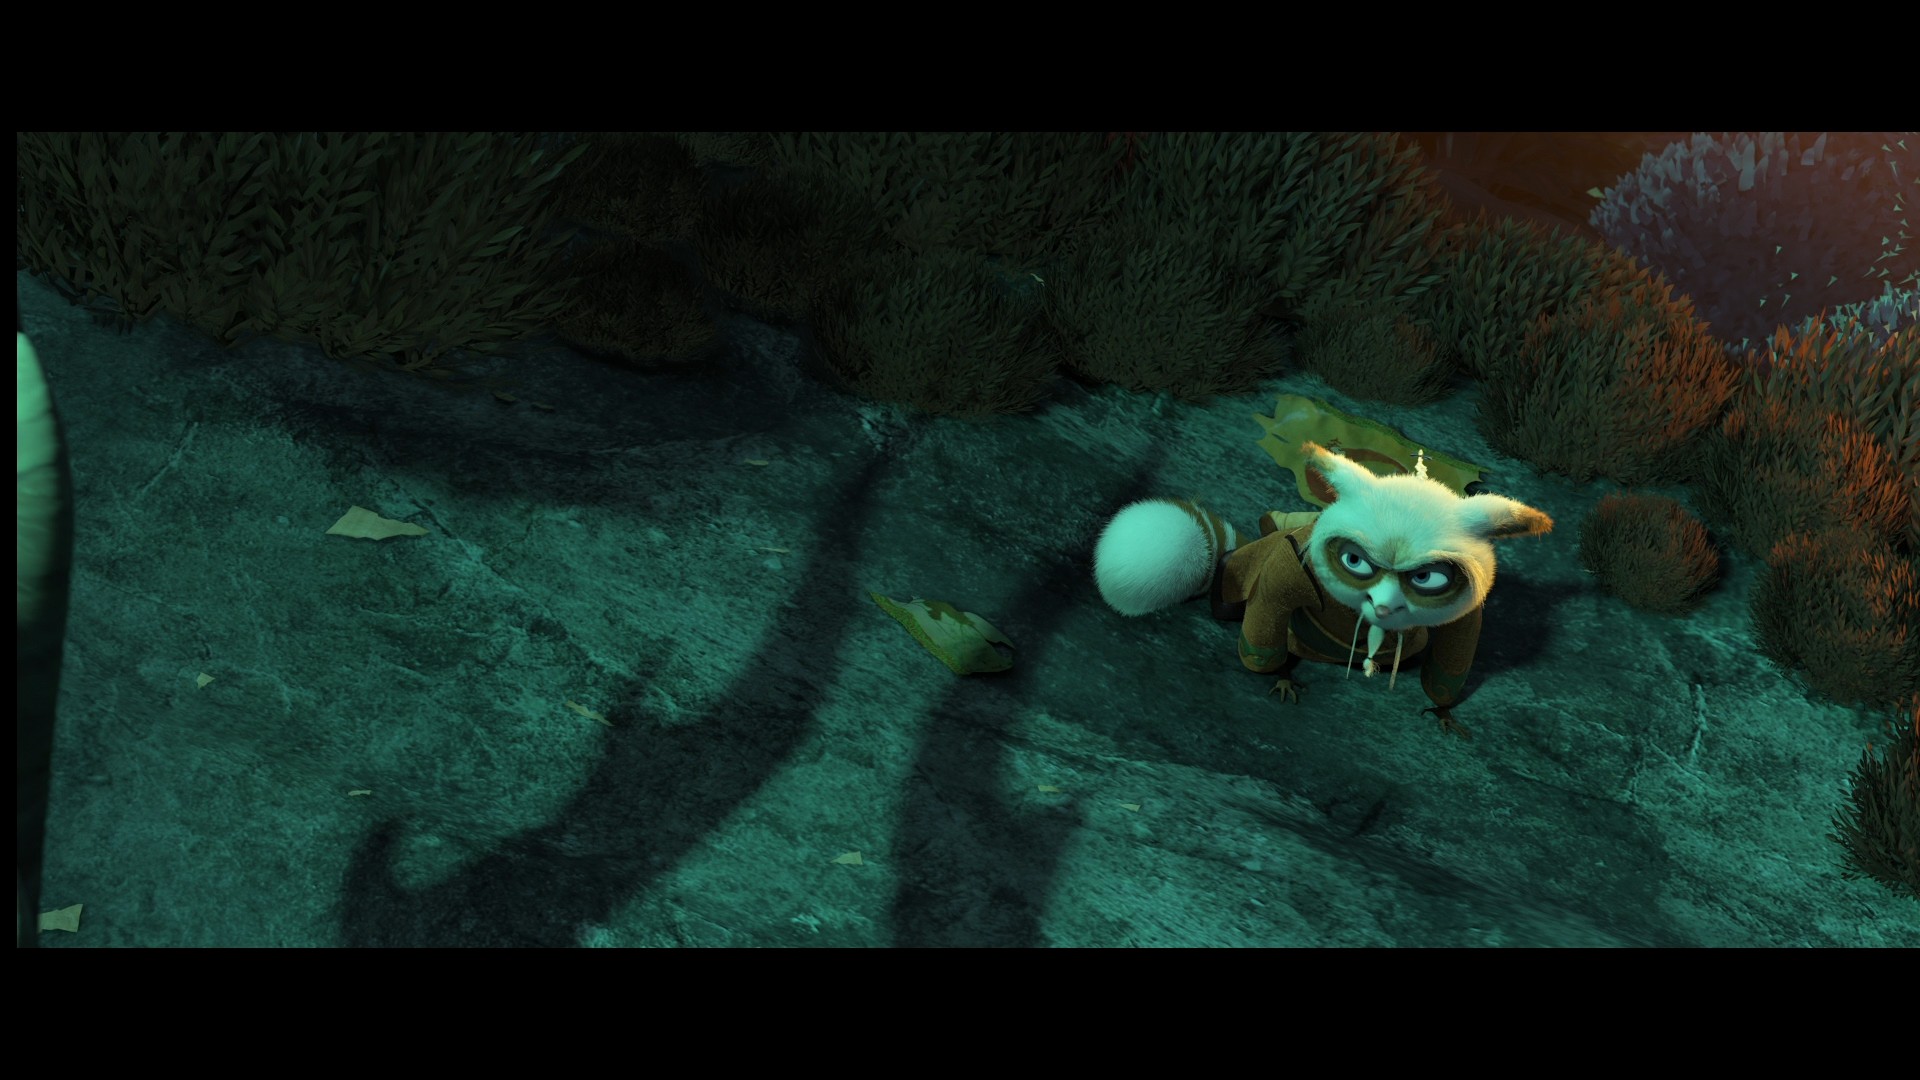 [功夫熊猫3].Kung.Fu.Panda.3.2016.HK.3D.BluRay.1080p.AVC.DTS-HD.MA.7.1-TTG   37.03G-9.jpg